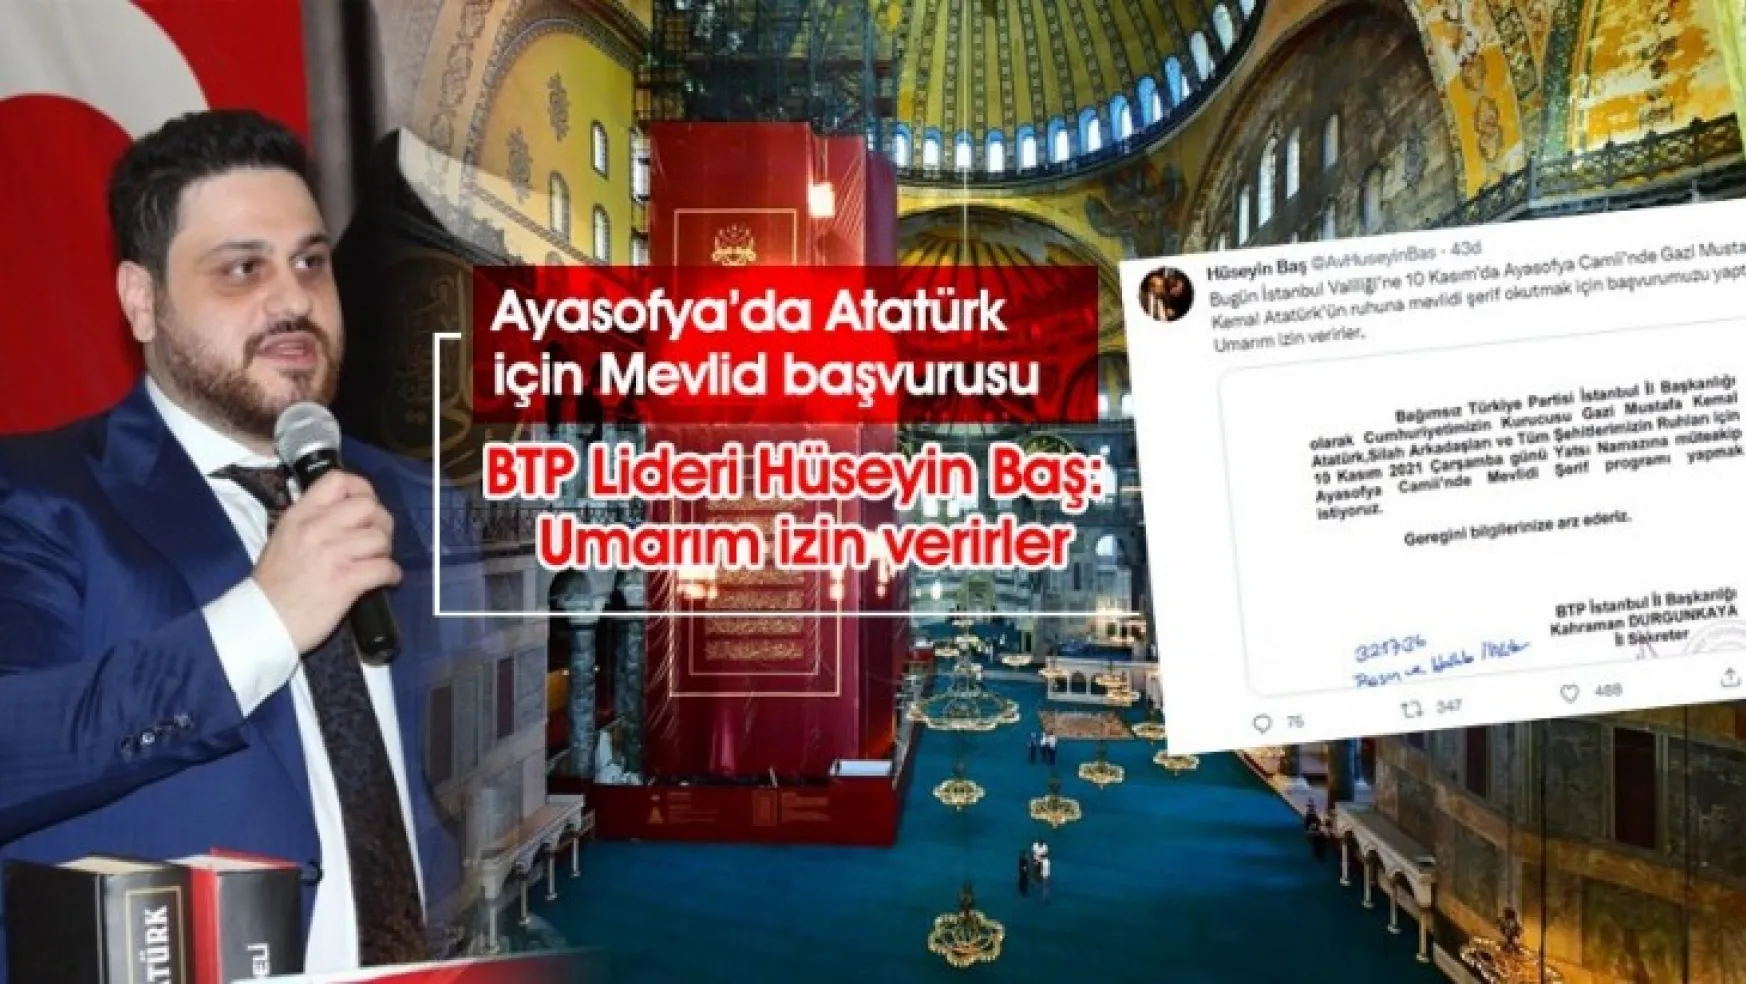 BTP Ayasofya'da Atatürk için Mevlid okutacak